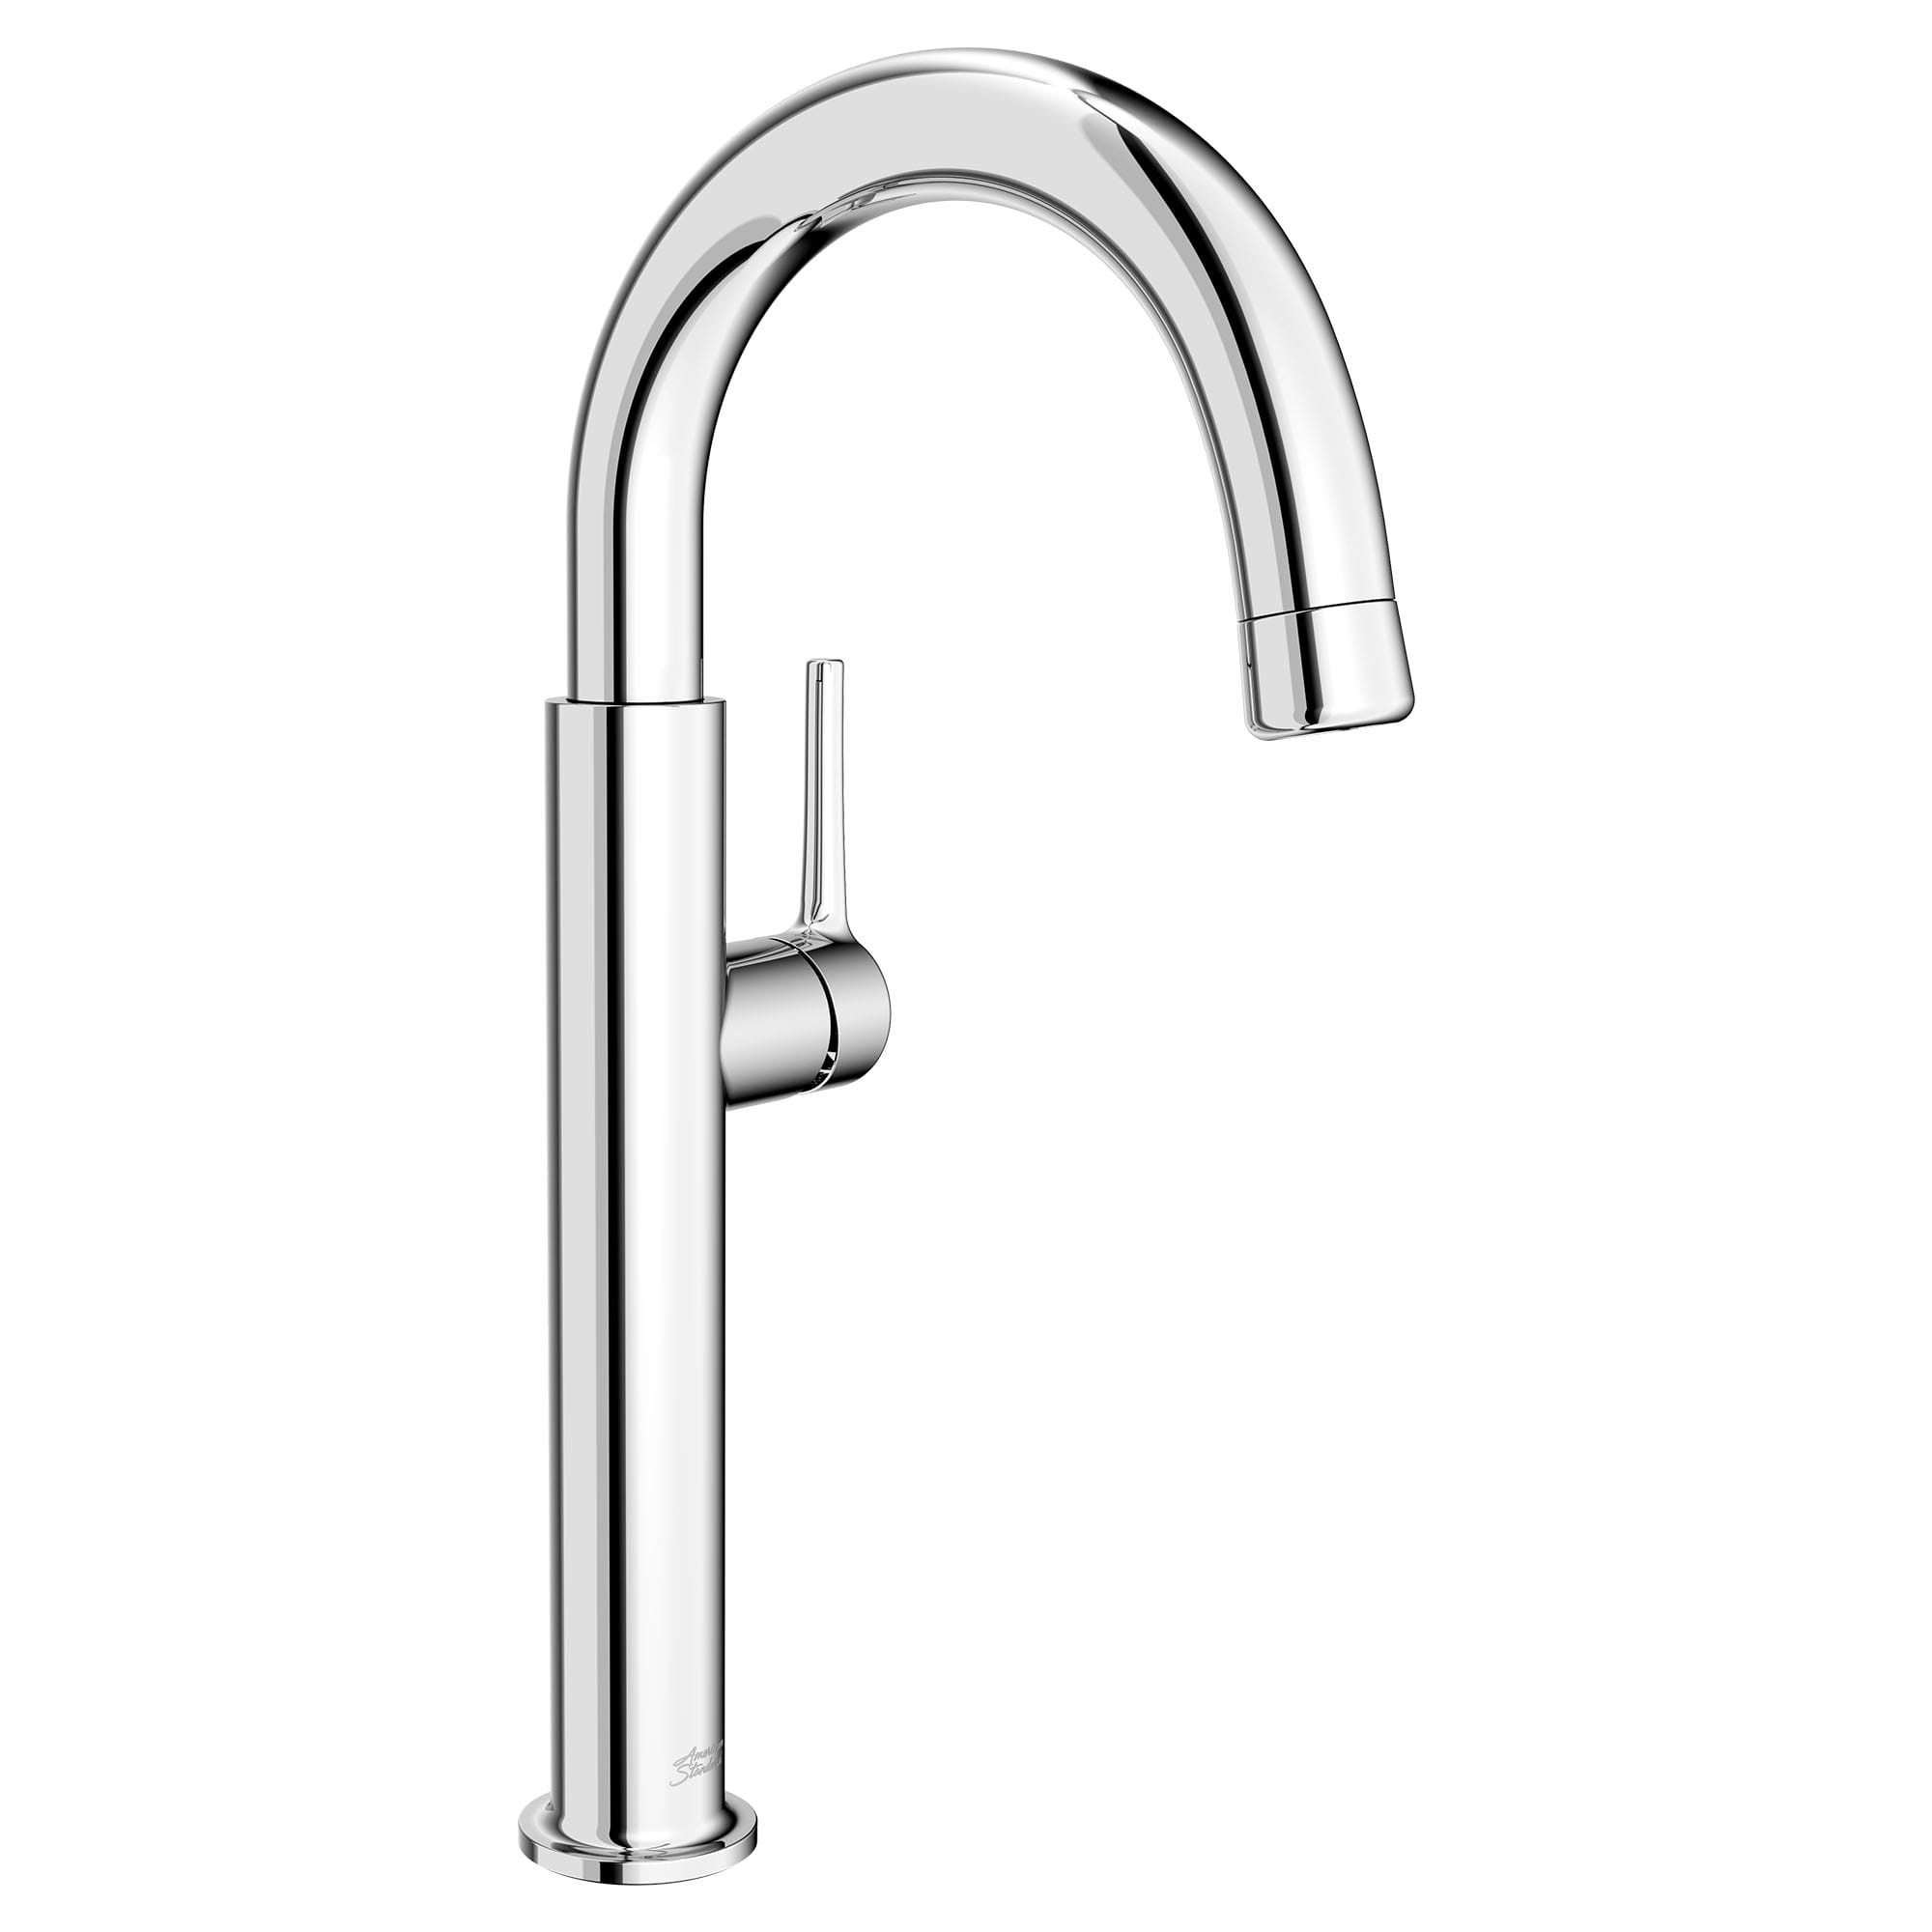 Studio® S Pull-Down Bar Faucet 1.5 gpm/5.7 L/min